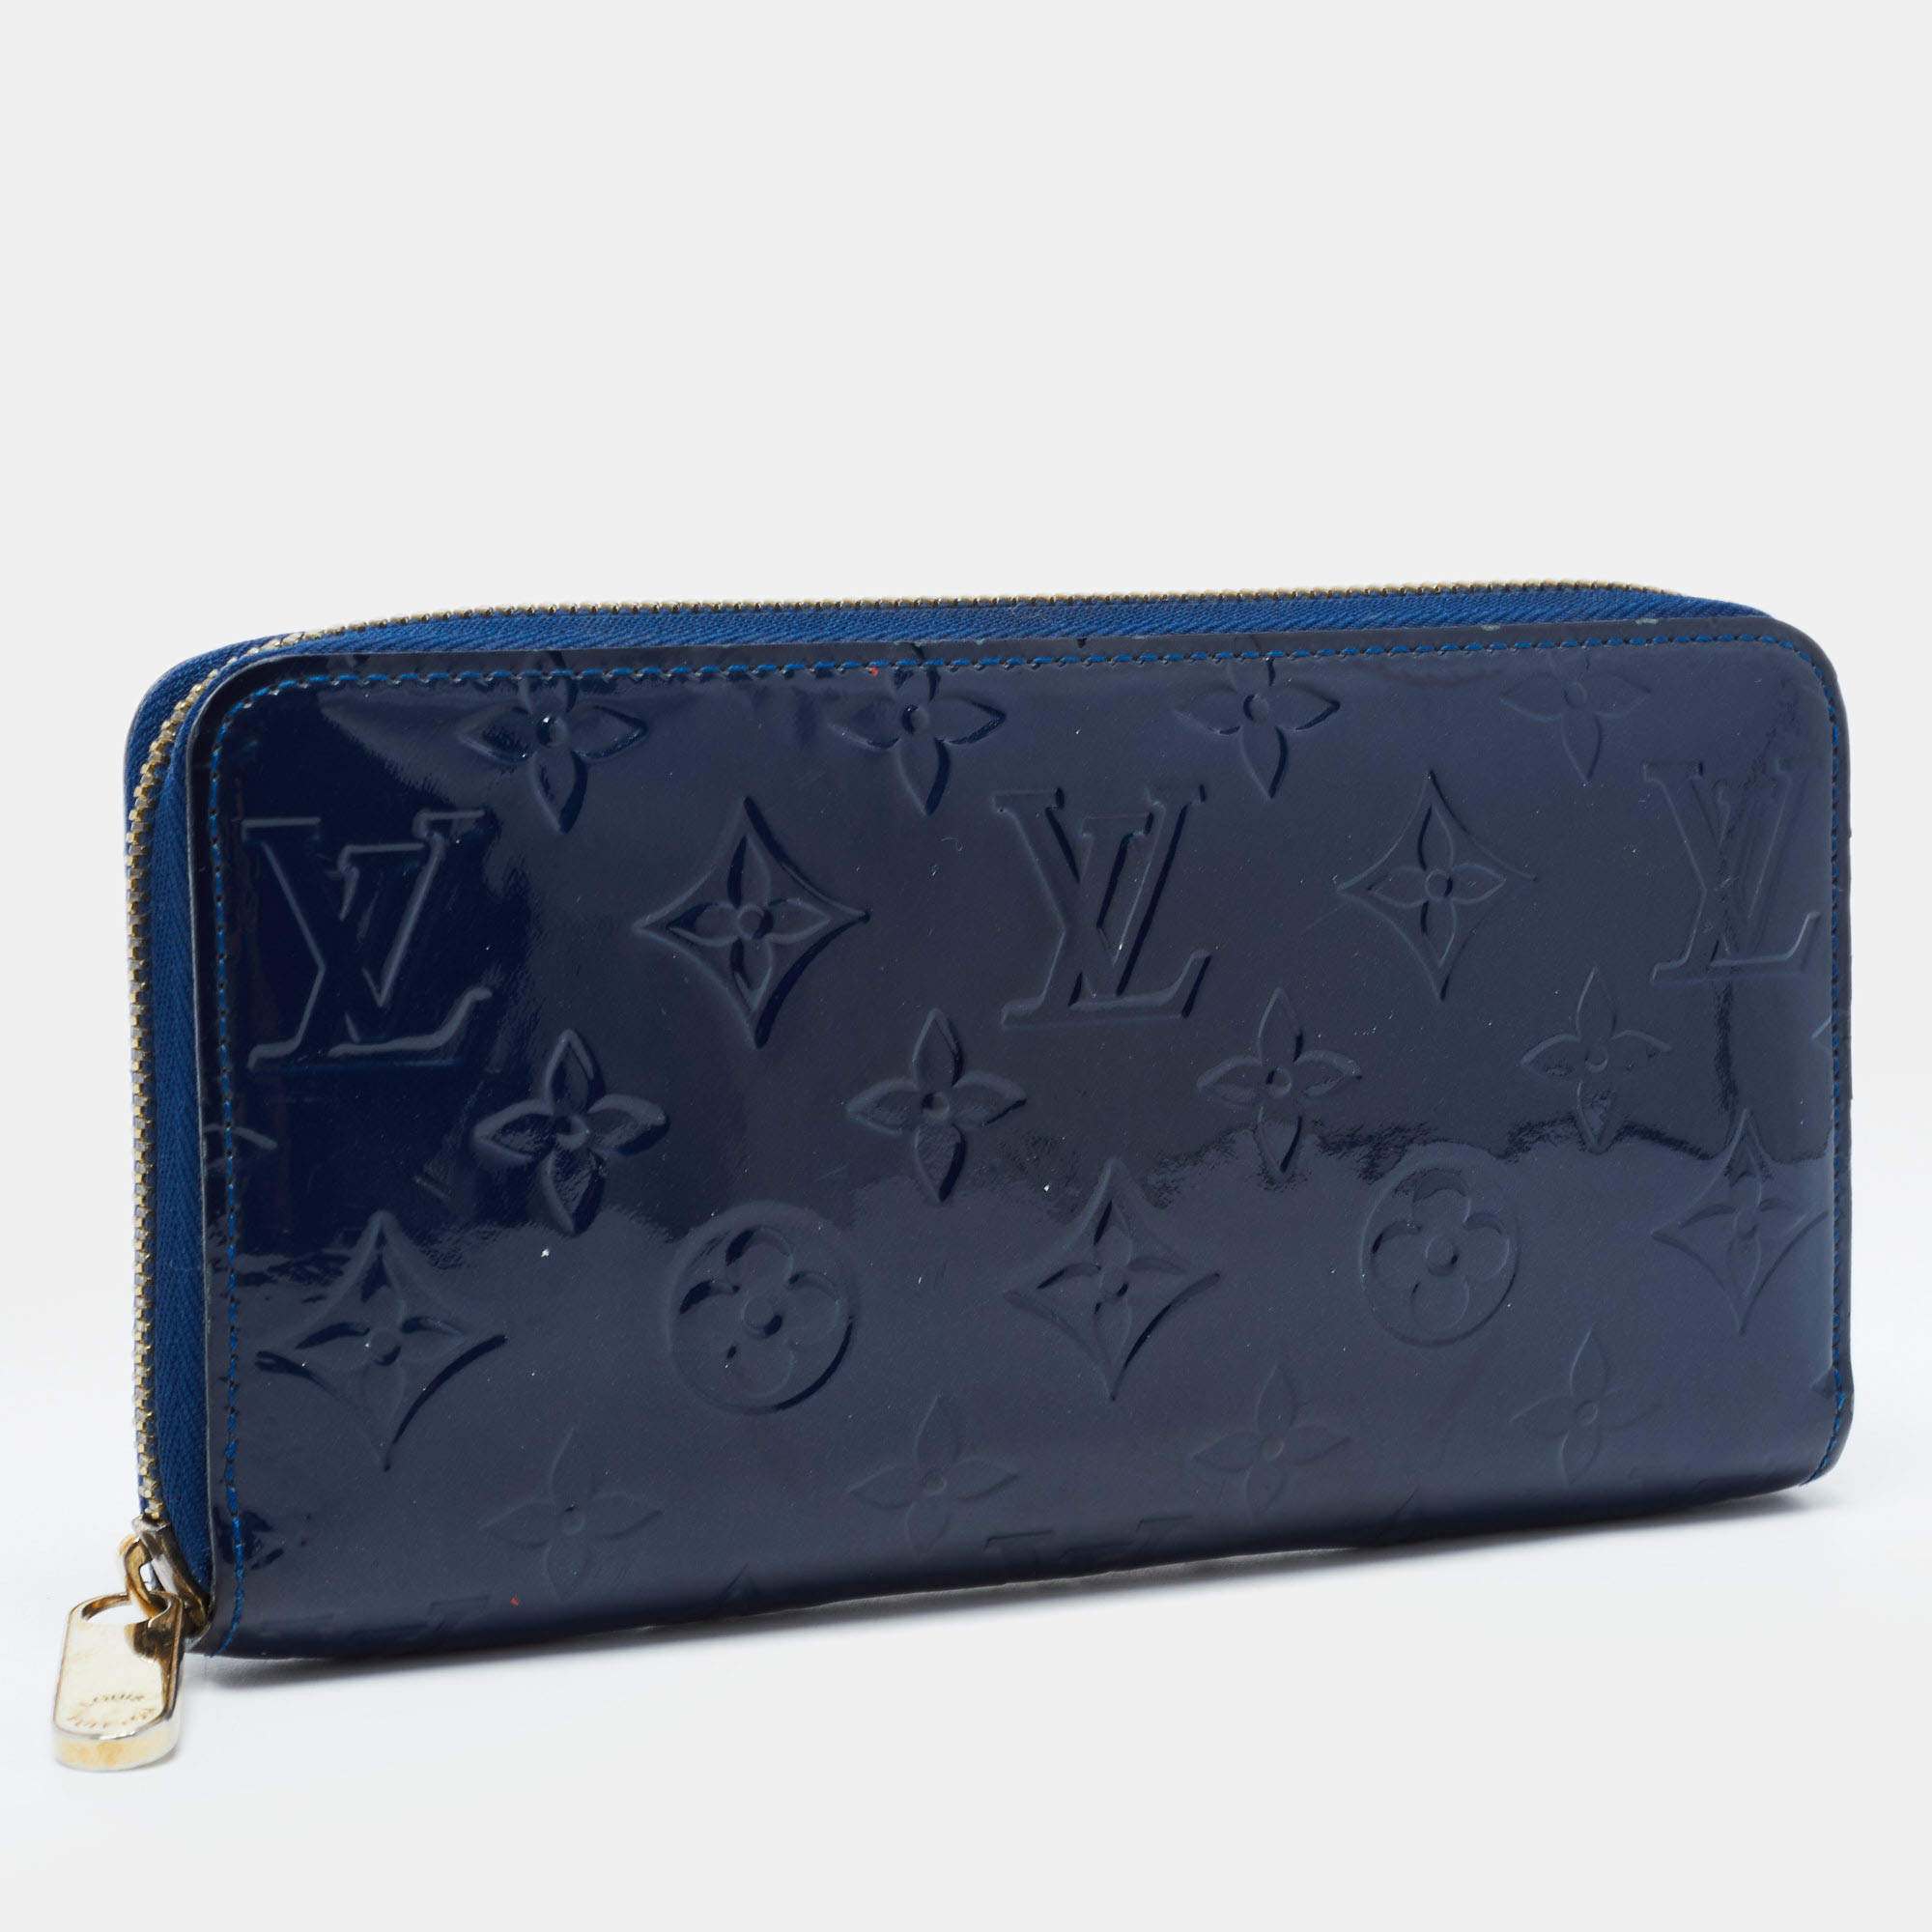 Louis Vuitton Light Blue Leather Articles de Voyage Zippy Wallet Zip Around 861160